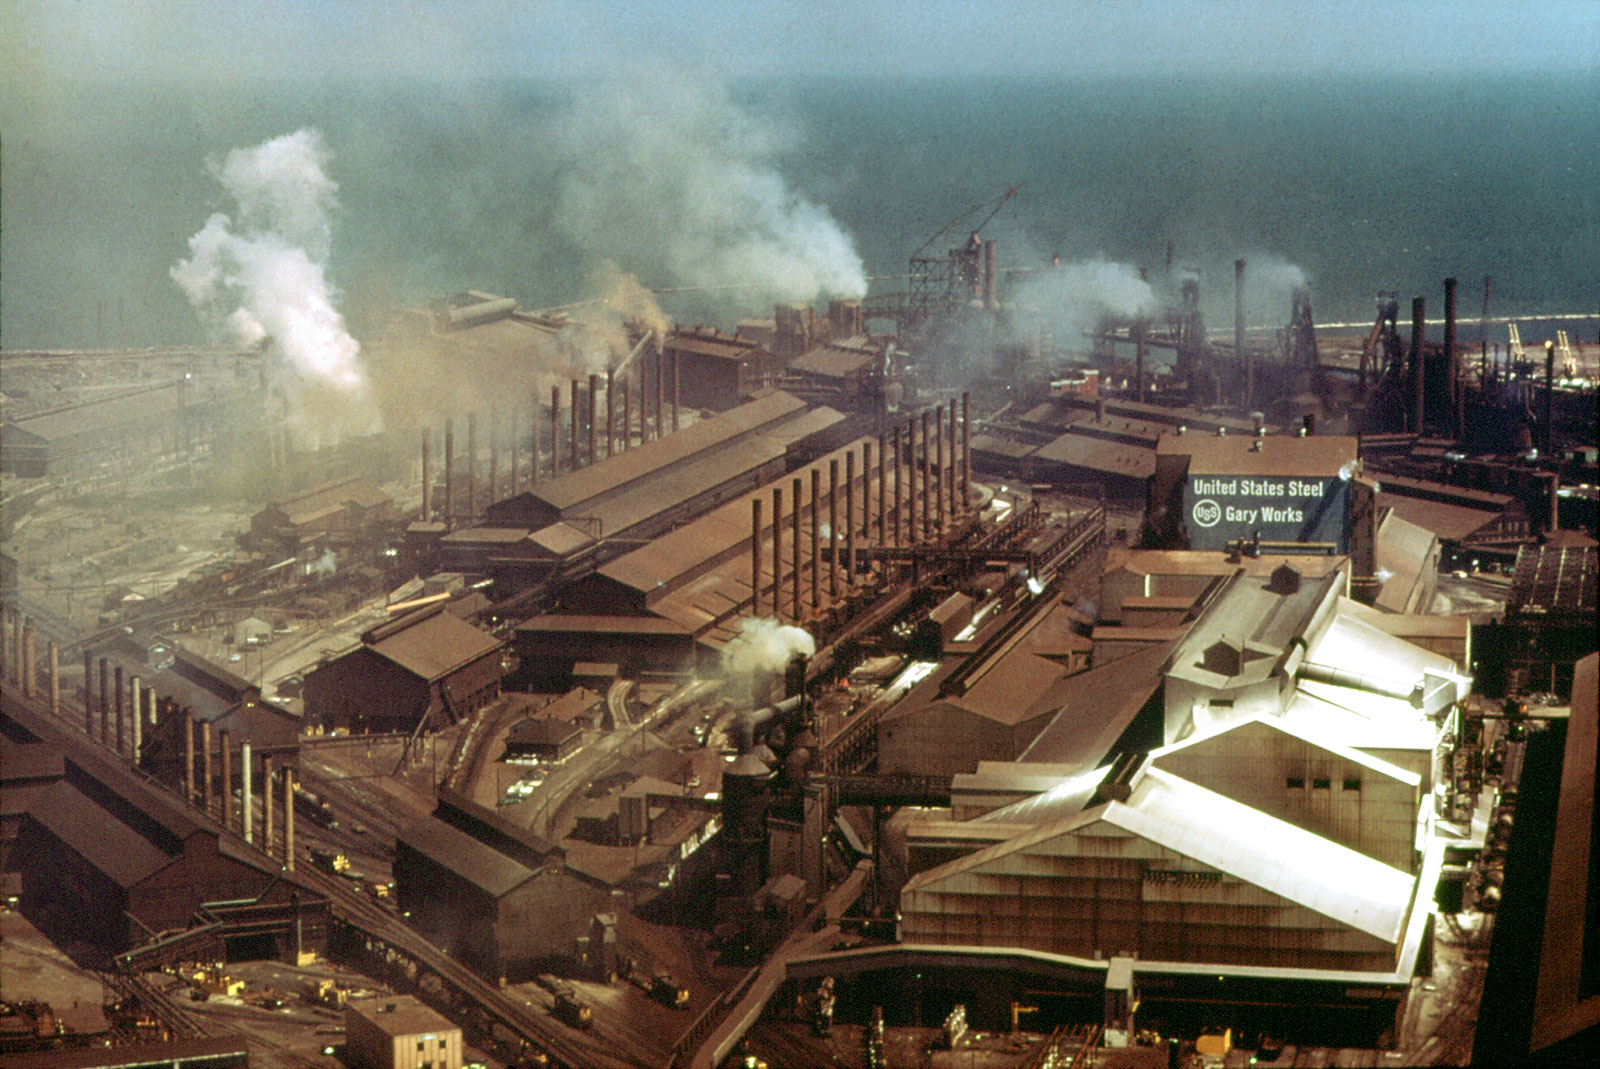 Gary Works steel mill in 1973